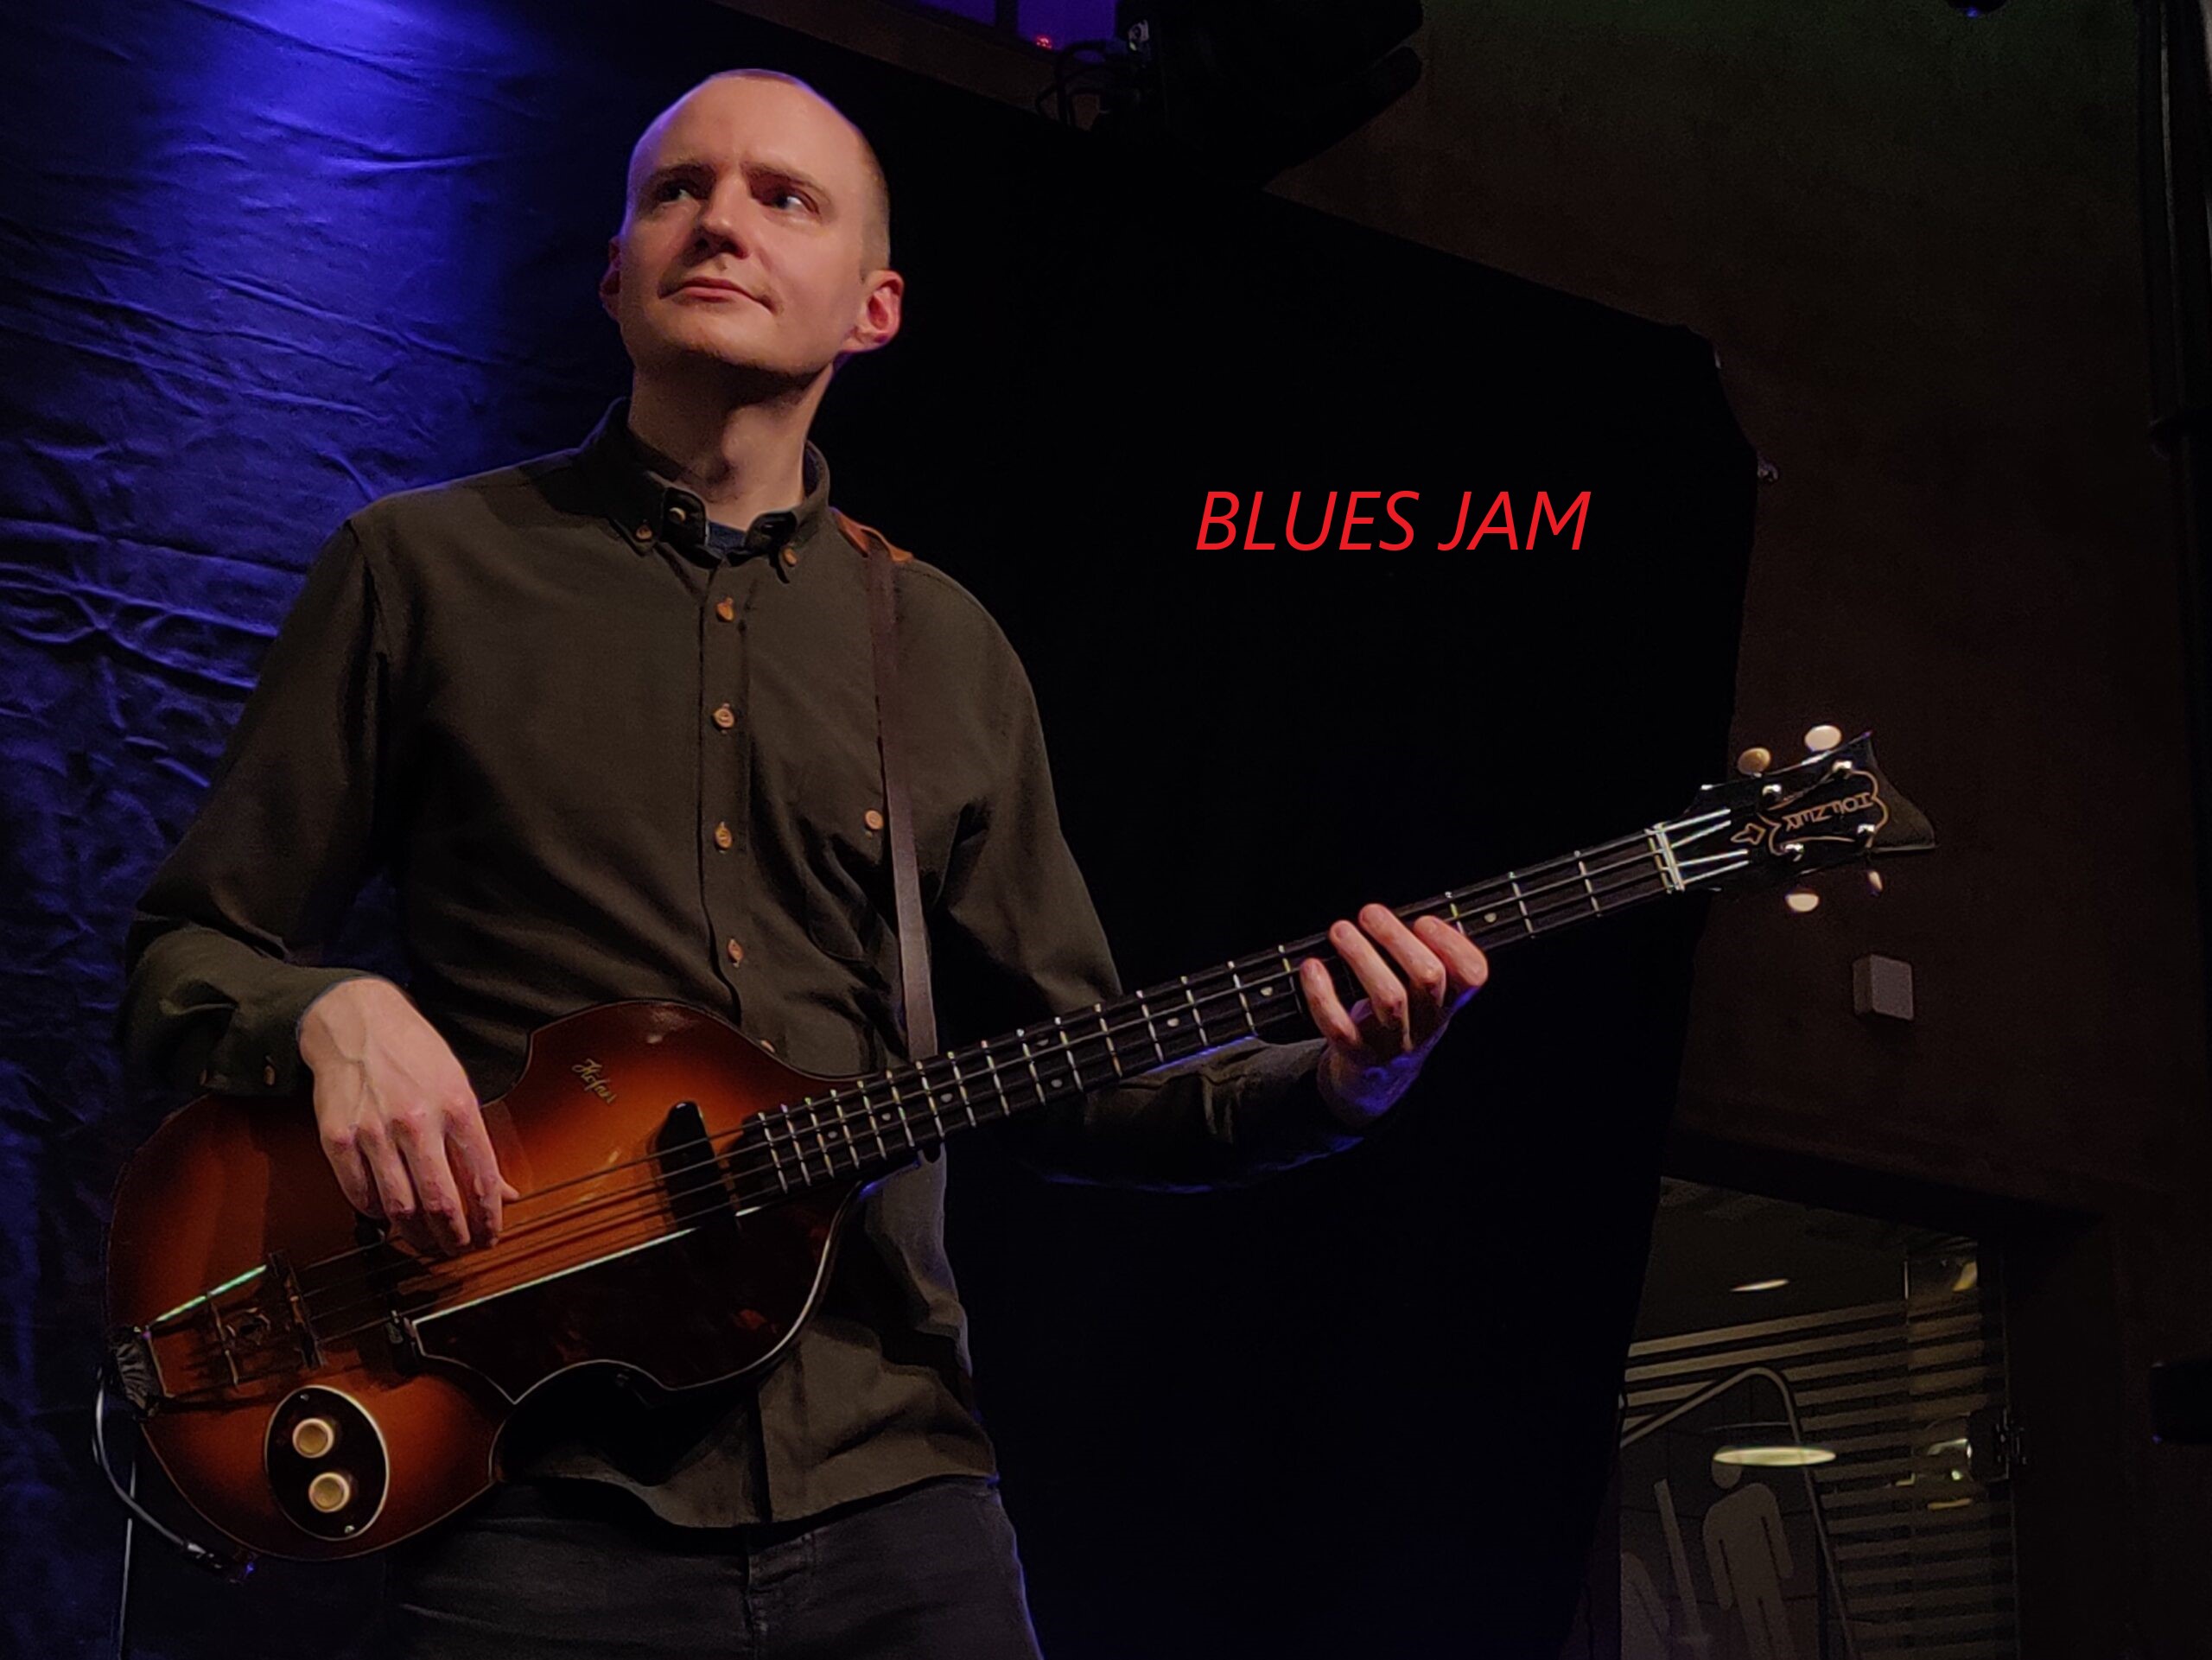 Blues Jam ved 
Joachim Svensmark, David Millman Laust Krudtmejer og Simon Ørregaard.
Jazzfestival